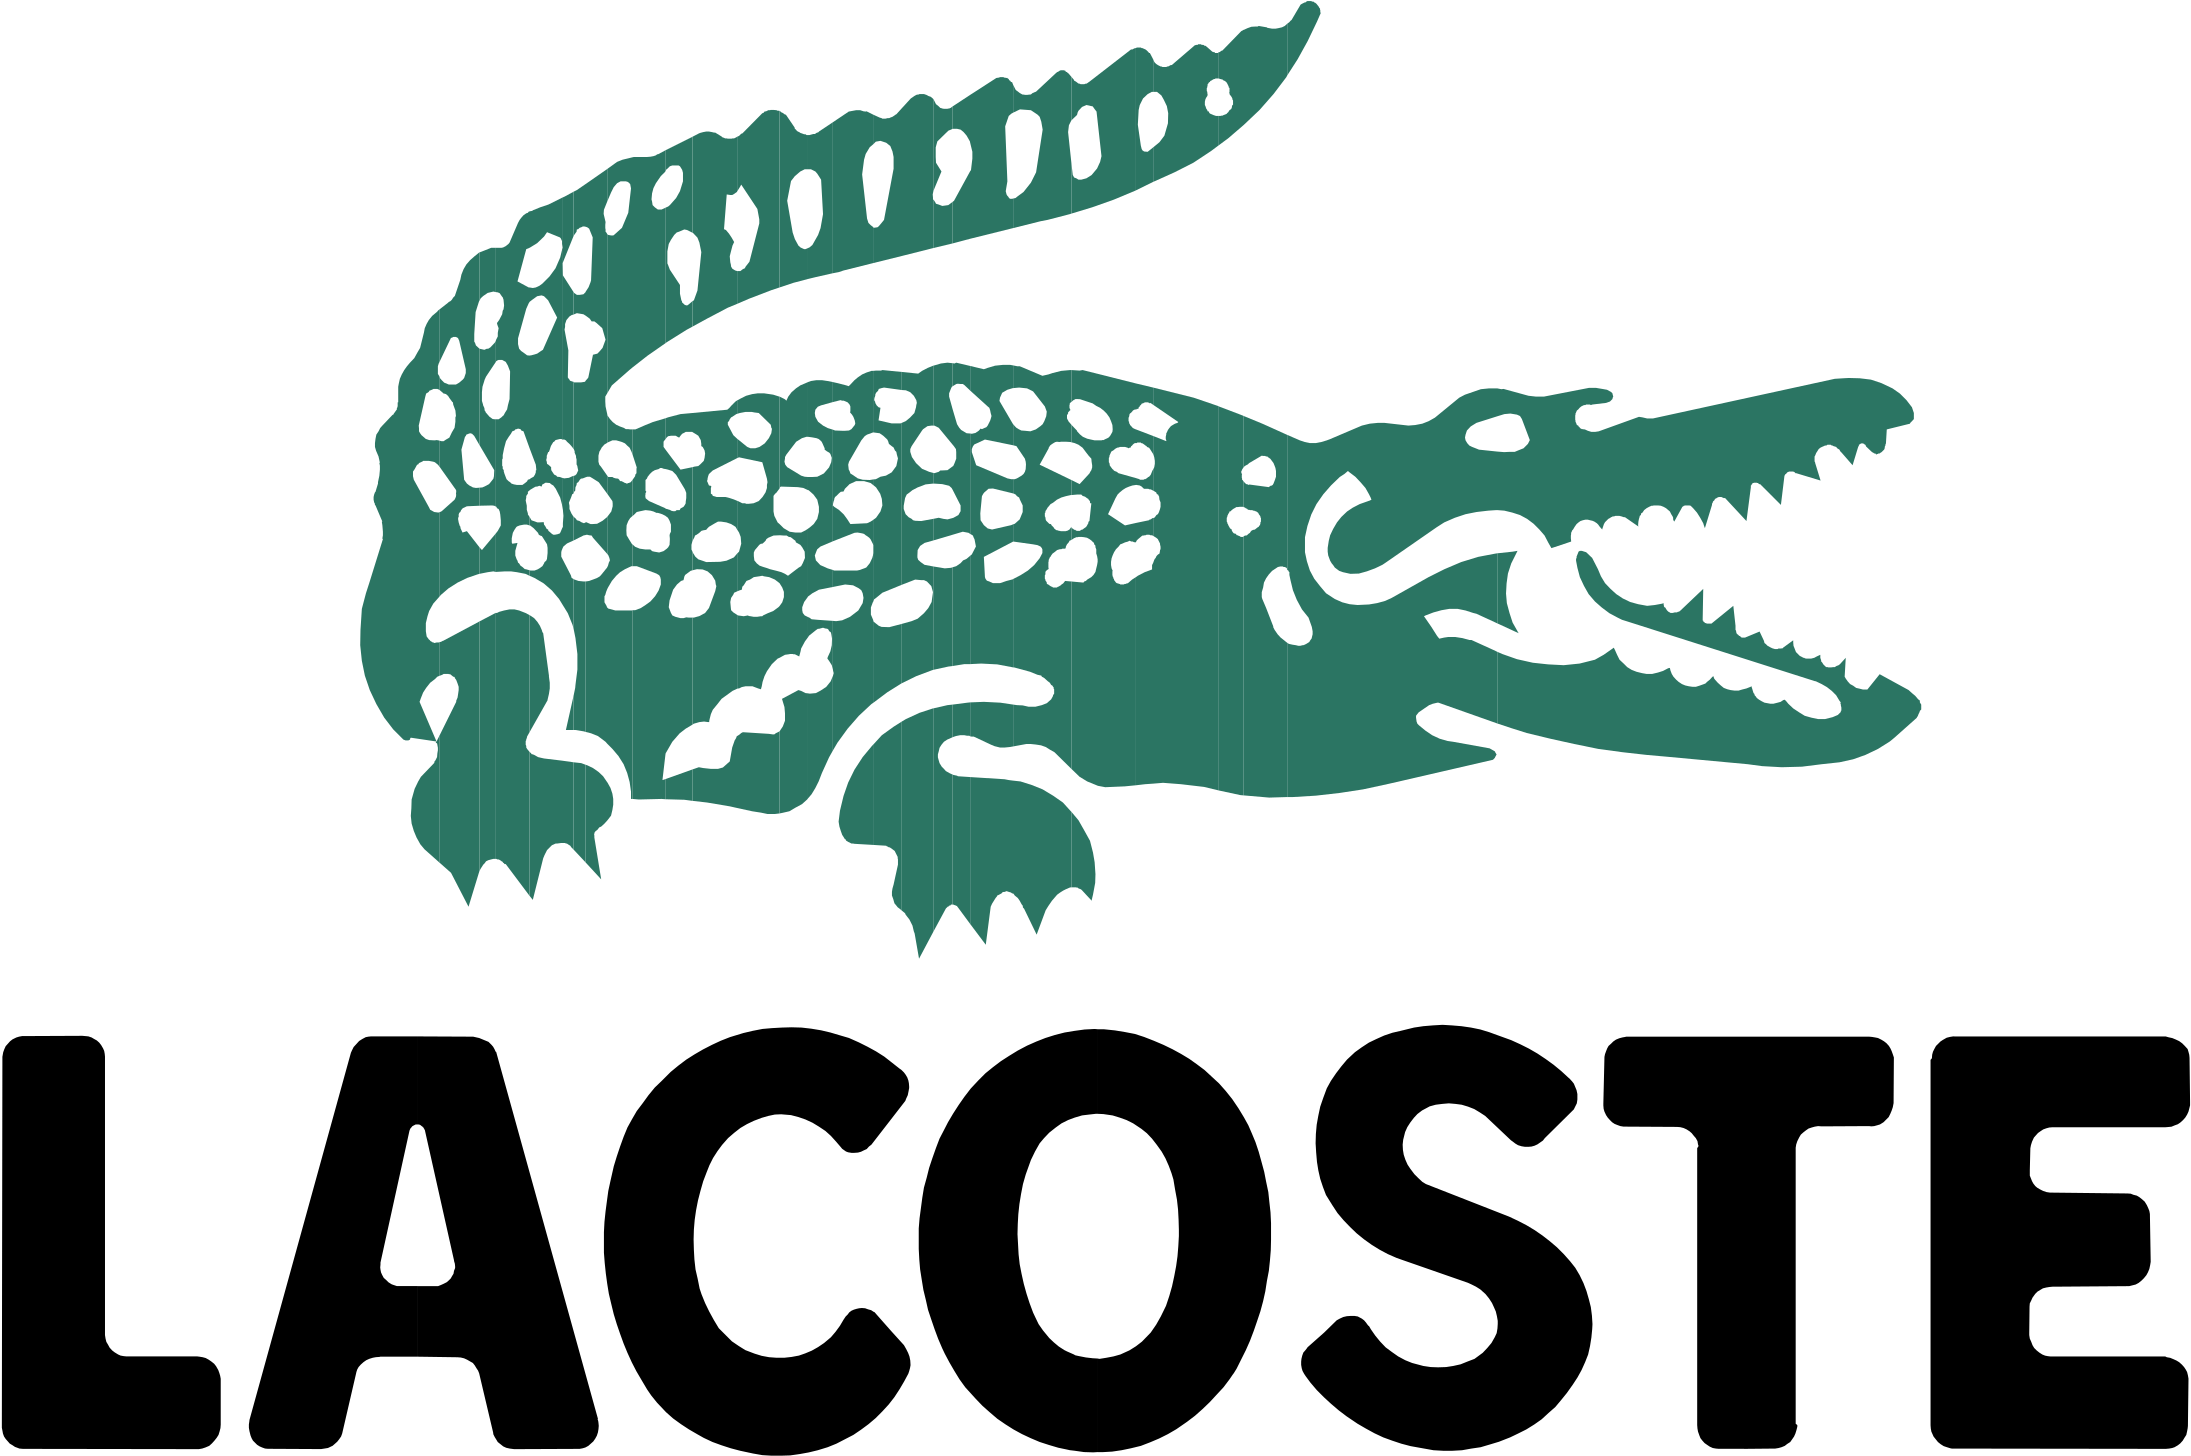 La coste. Lacoste логотип. Фирменный знак лакоста. Лакосте логотип оригинал. Бренд с крокодилом.